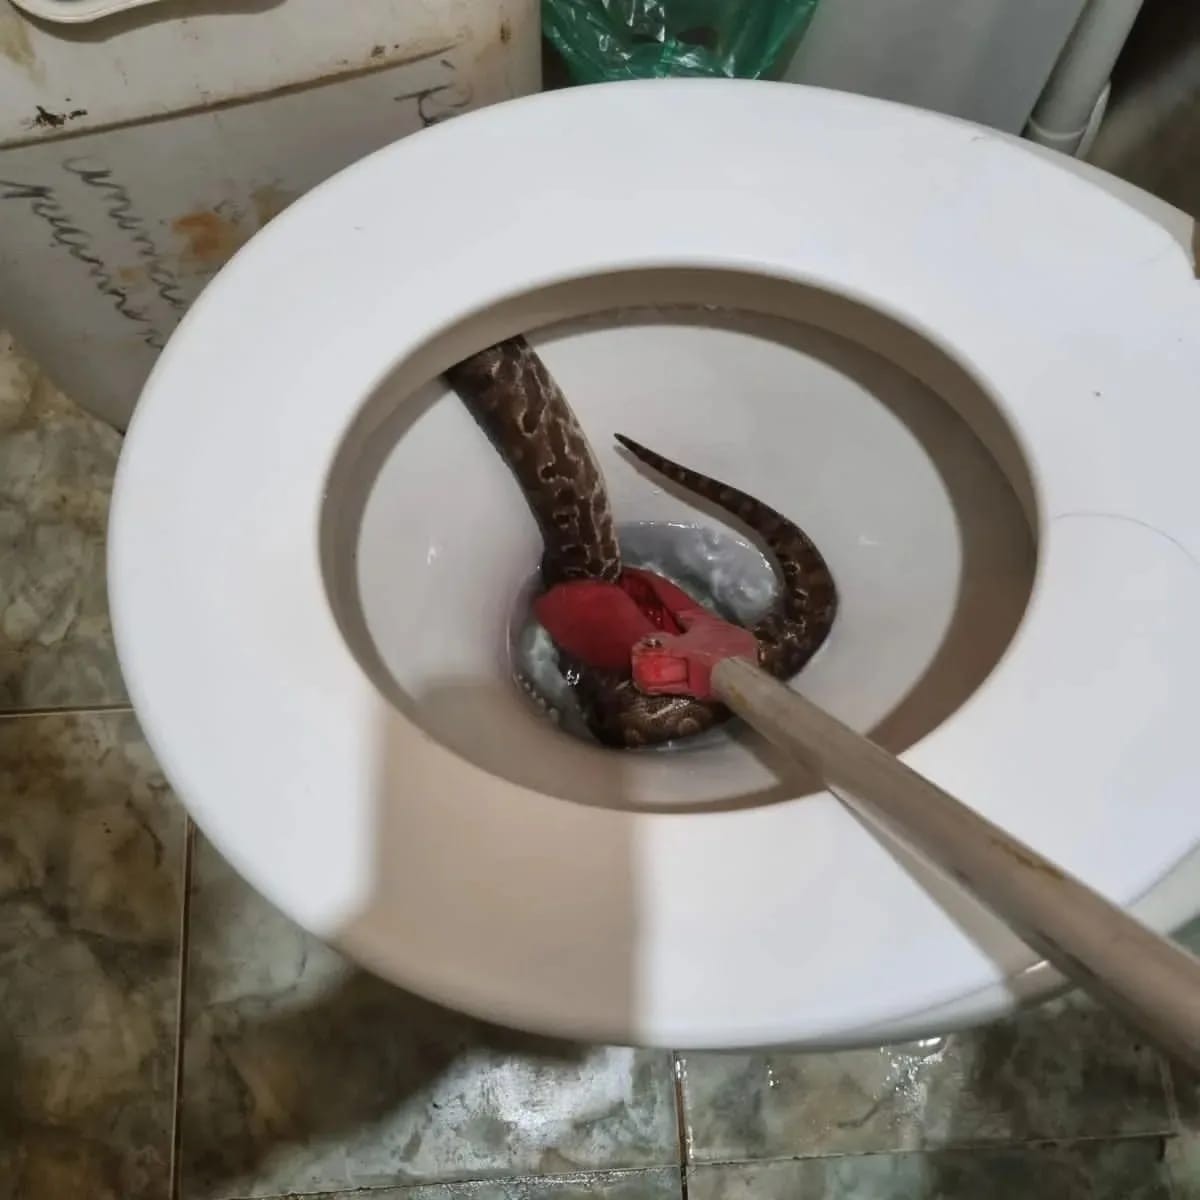 Na Austrália, cobras infestam vasos sanitários - Jornal O Globo